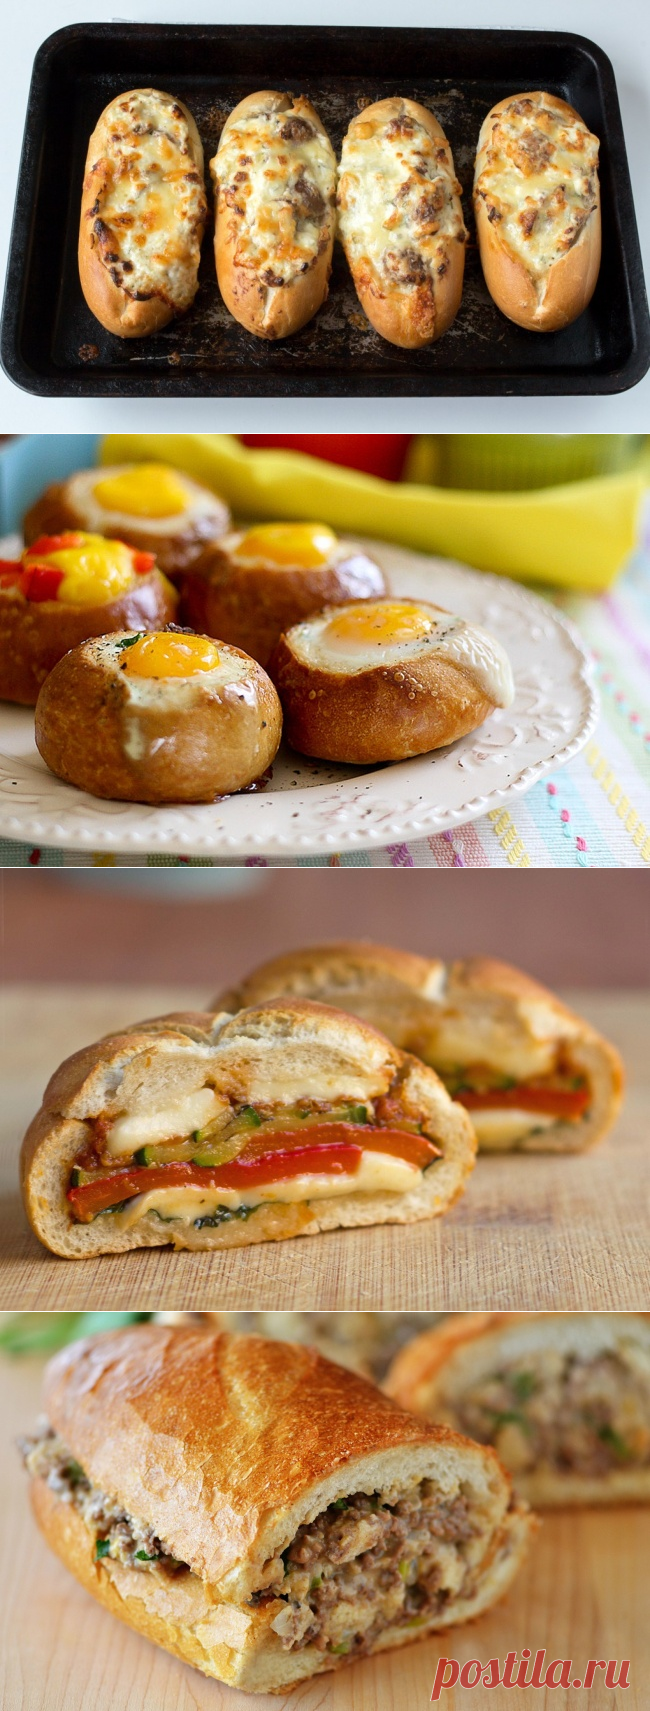 4 рецепта бутербродов для неторопливых воскресных завтраков